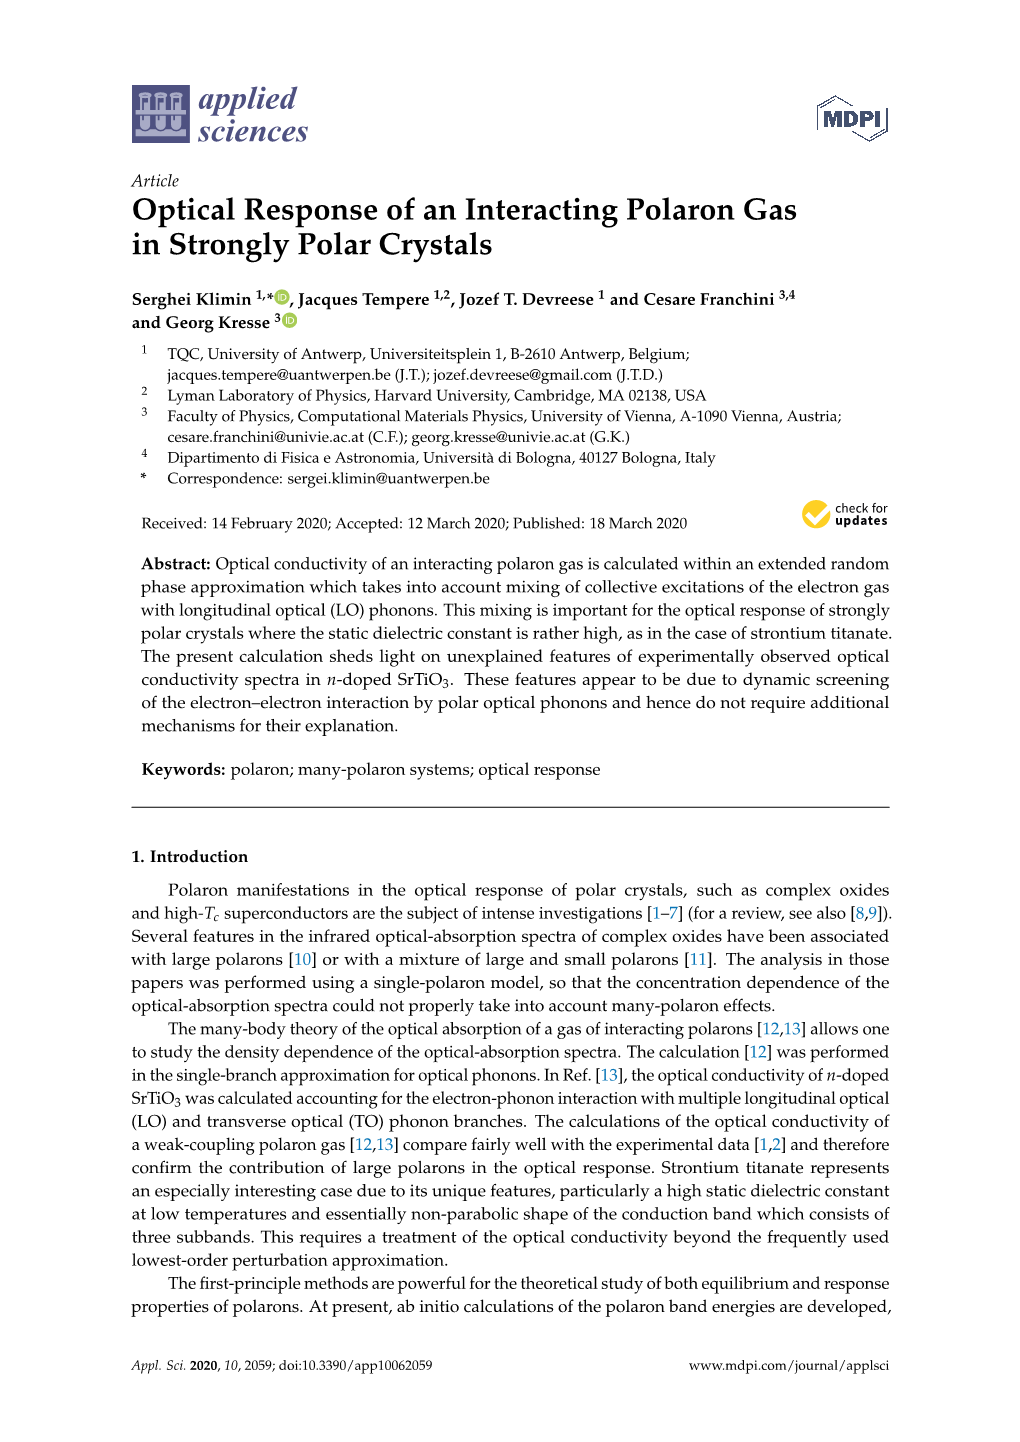 Optical Response of an Interacting Polaron Gas in Strongly Polar Crystals